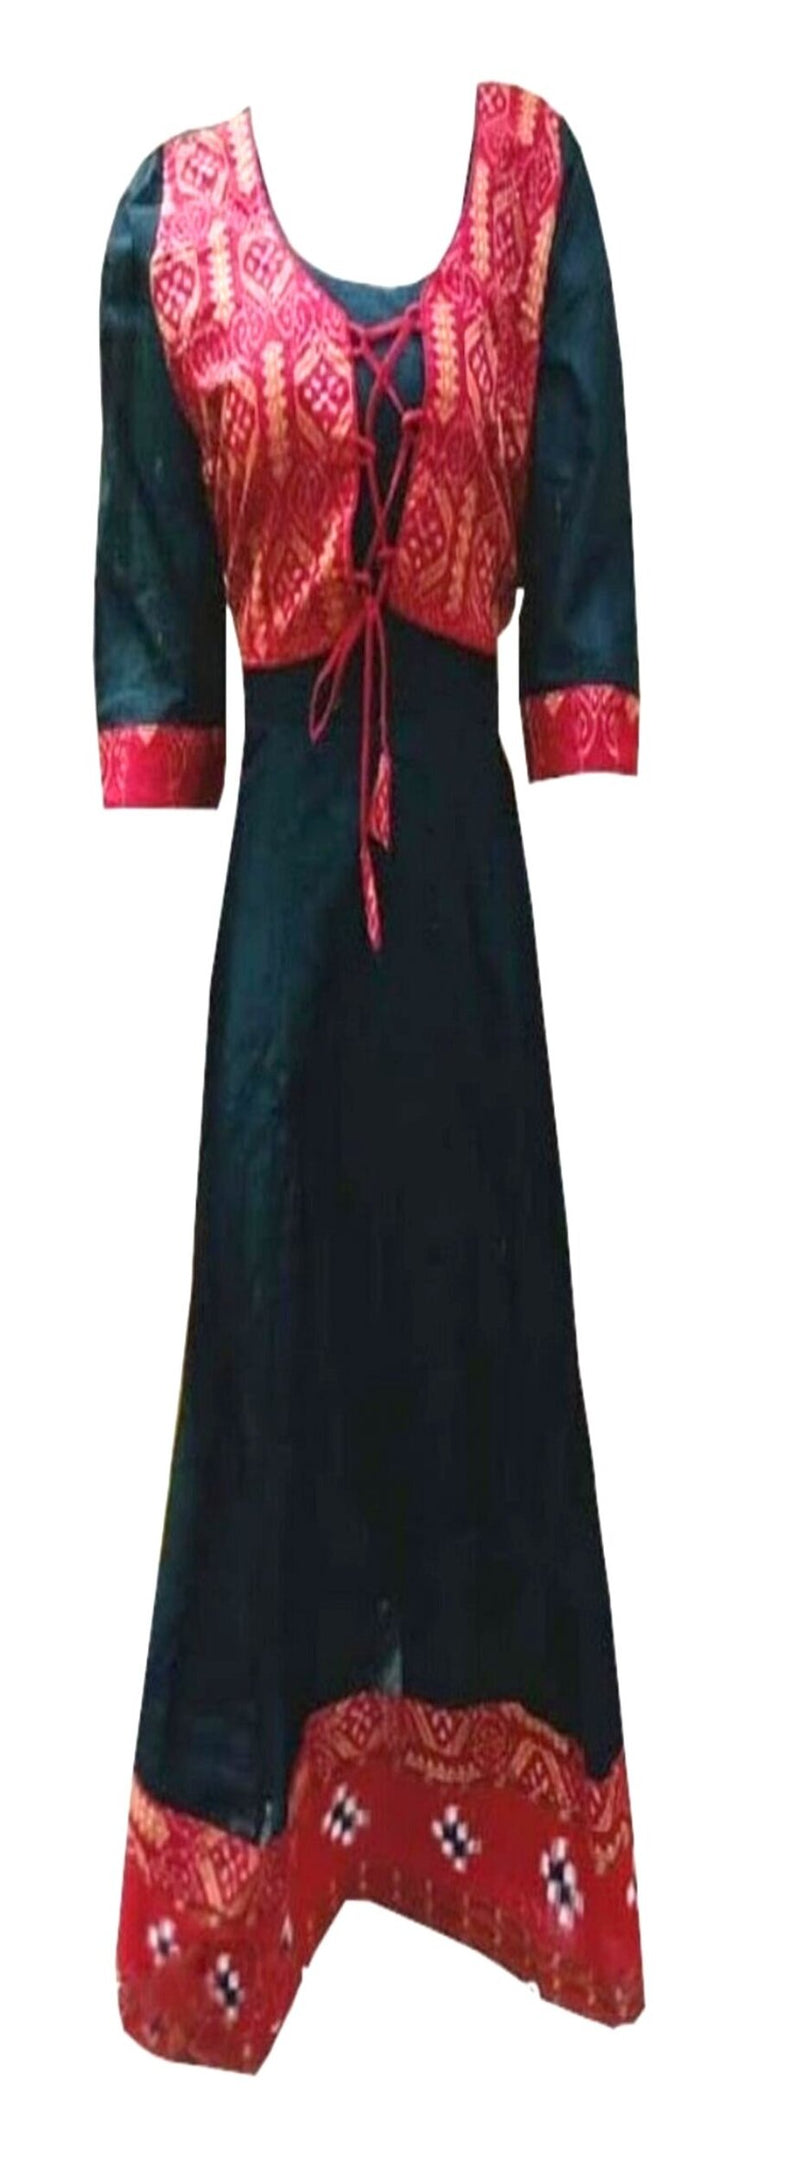 Ikat and sambalpuri round neck black red handloom kurti - Trenditional -  2660936